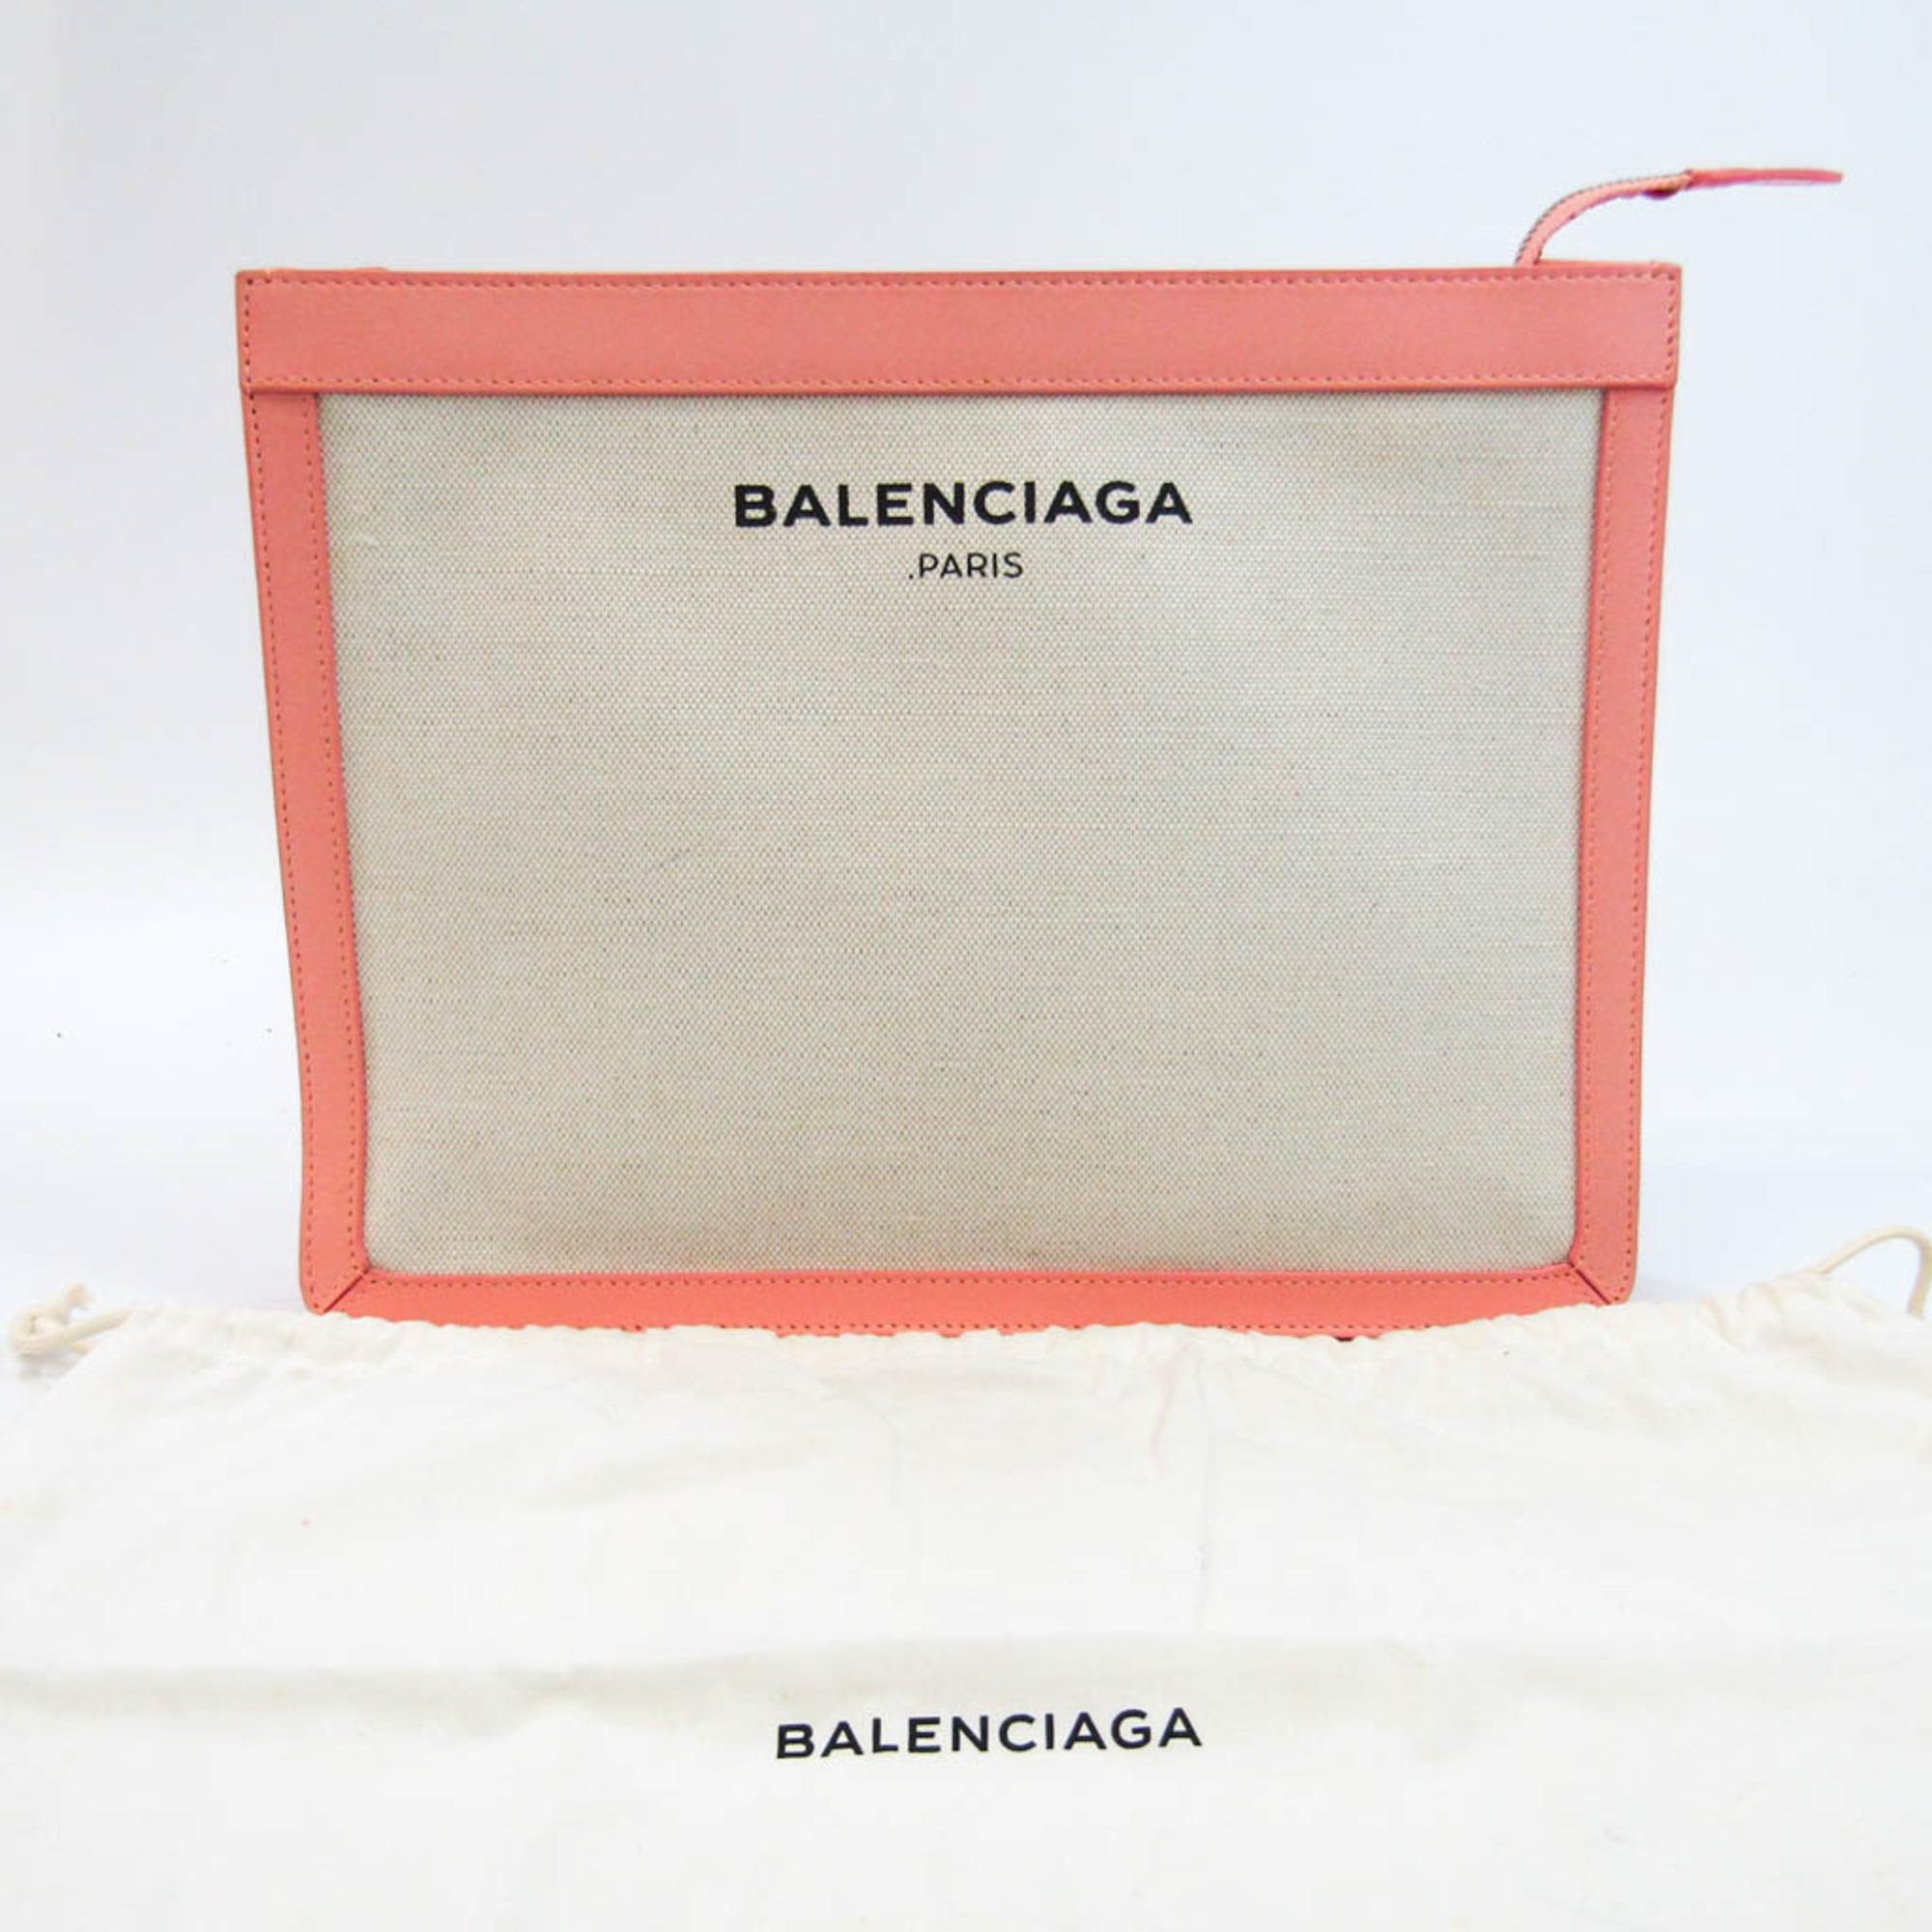 バレンシアガ(Balenciaga) NAVY POUCH 410119 レディース キャンバス,レザー クラッチバッグ,ポーチ ライトピンク,オフホワイト